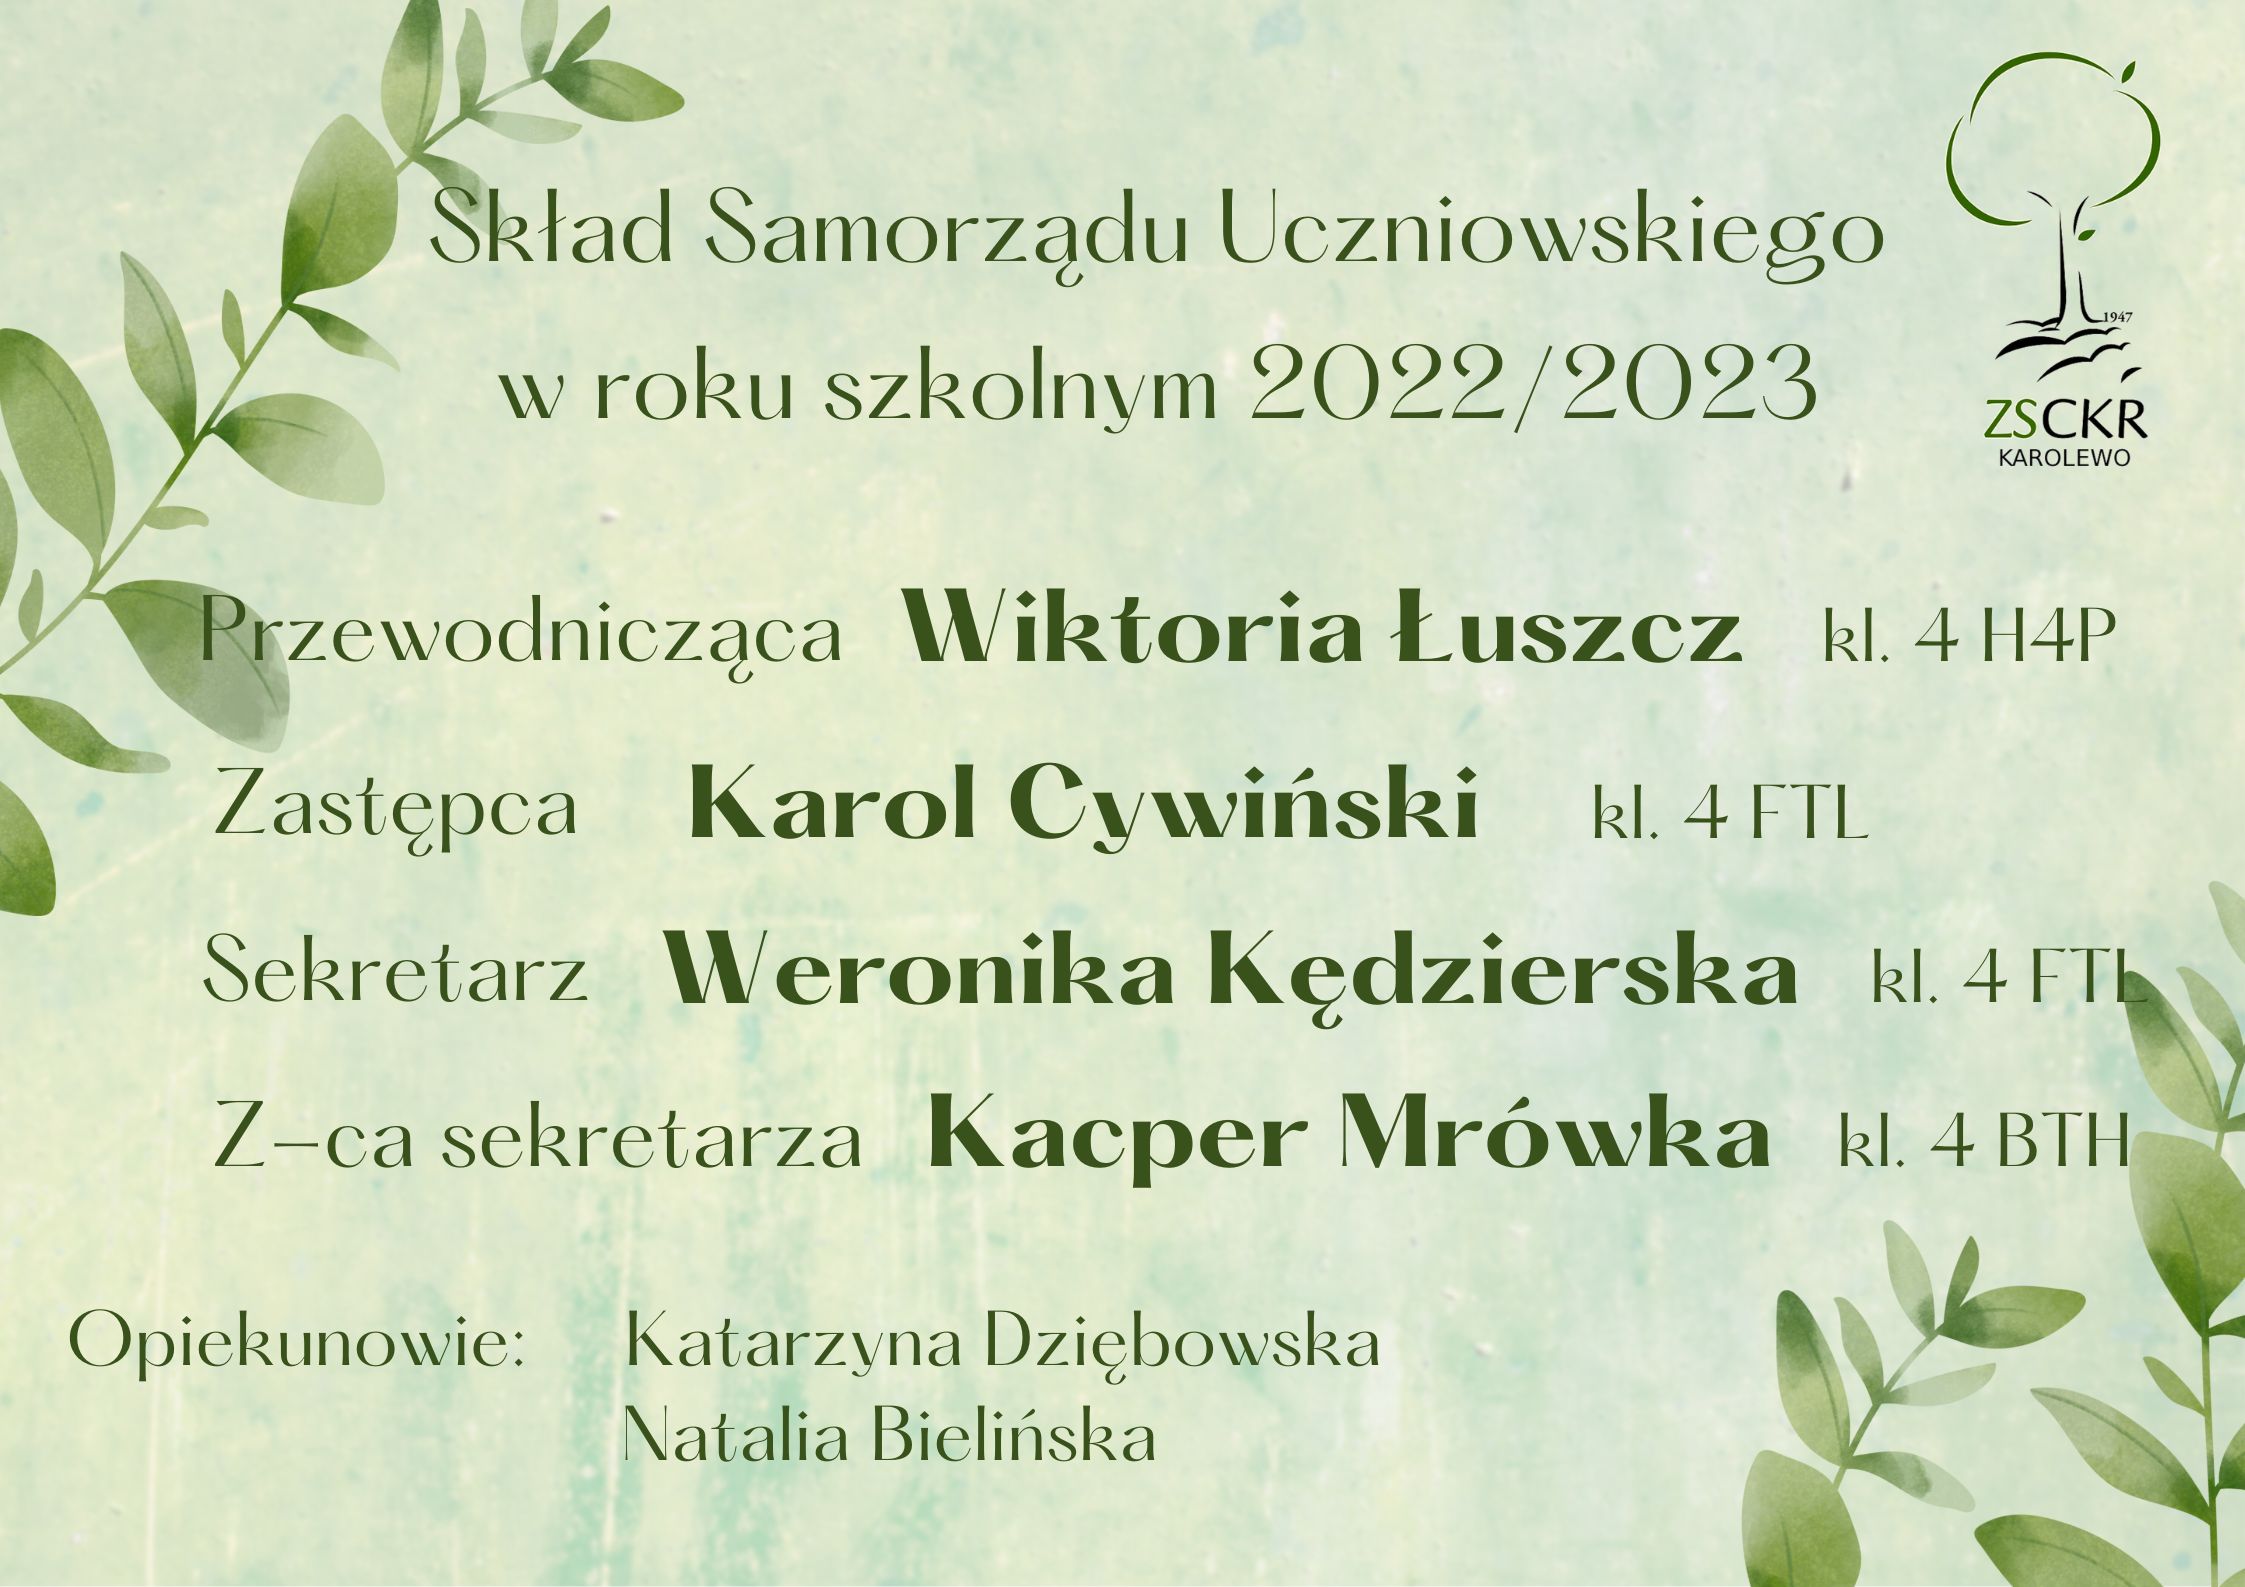 Sklad-Samorzadu-Uczniowskiego-Weronika.jpg